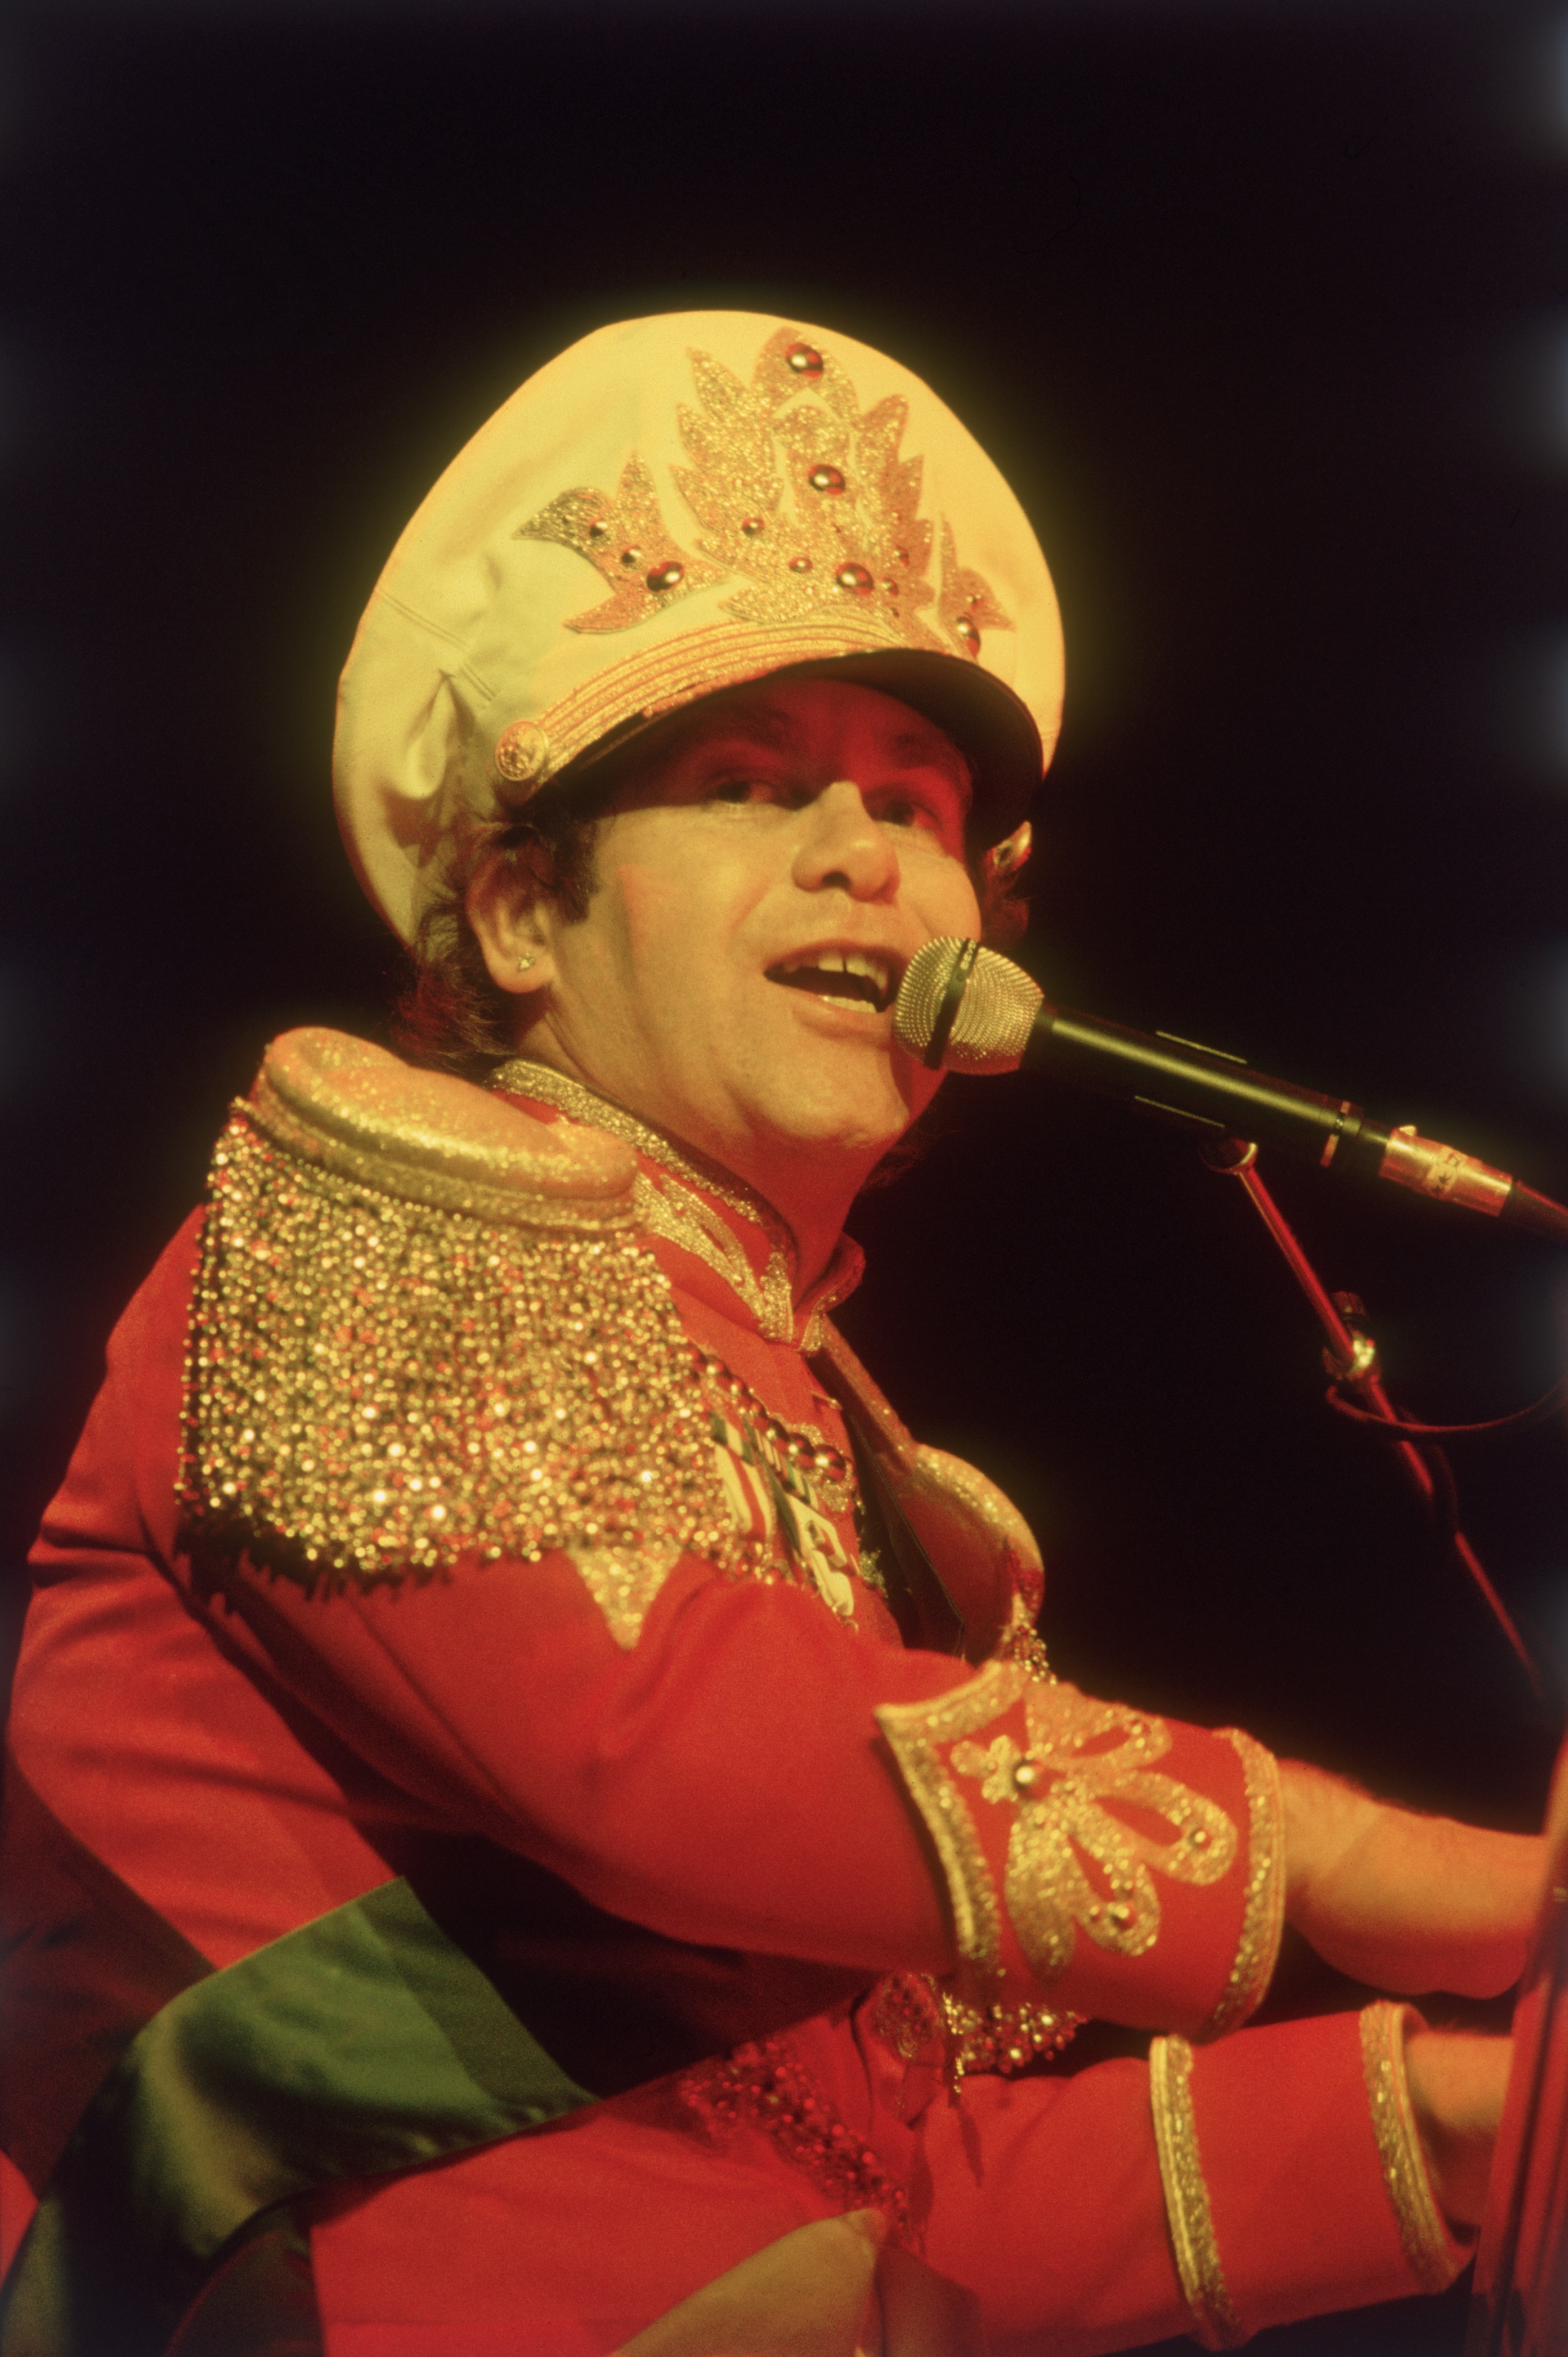 Dicembre 1982. Elton John si esibisce indossando la parodia di un'uniforme militare